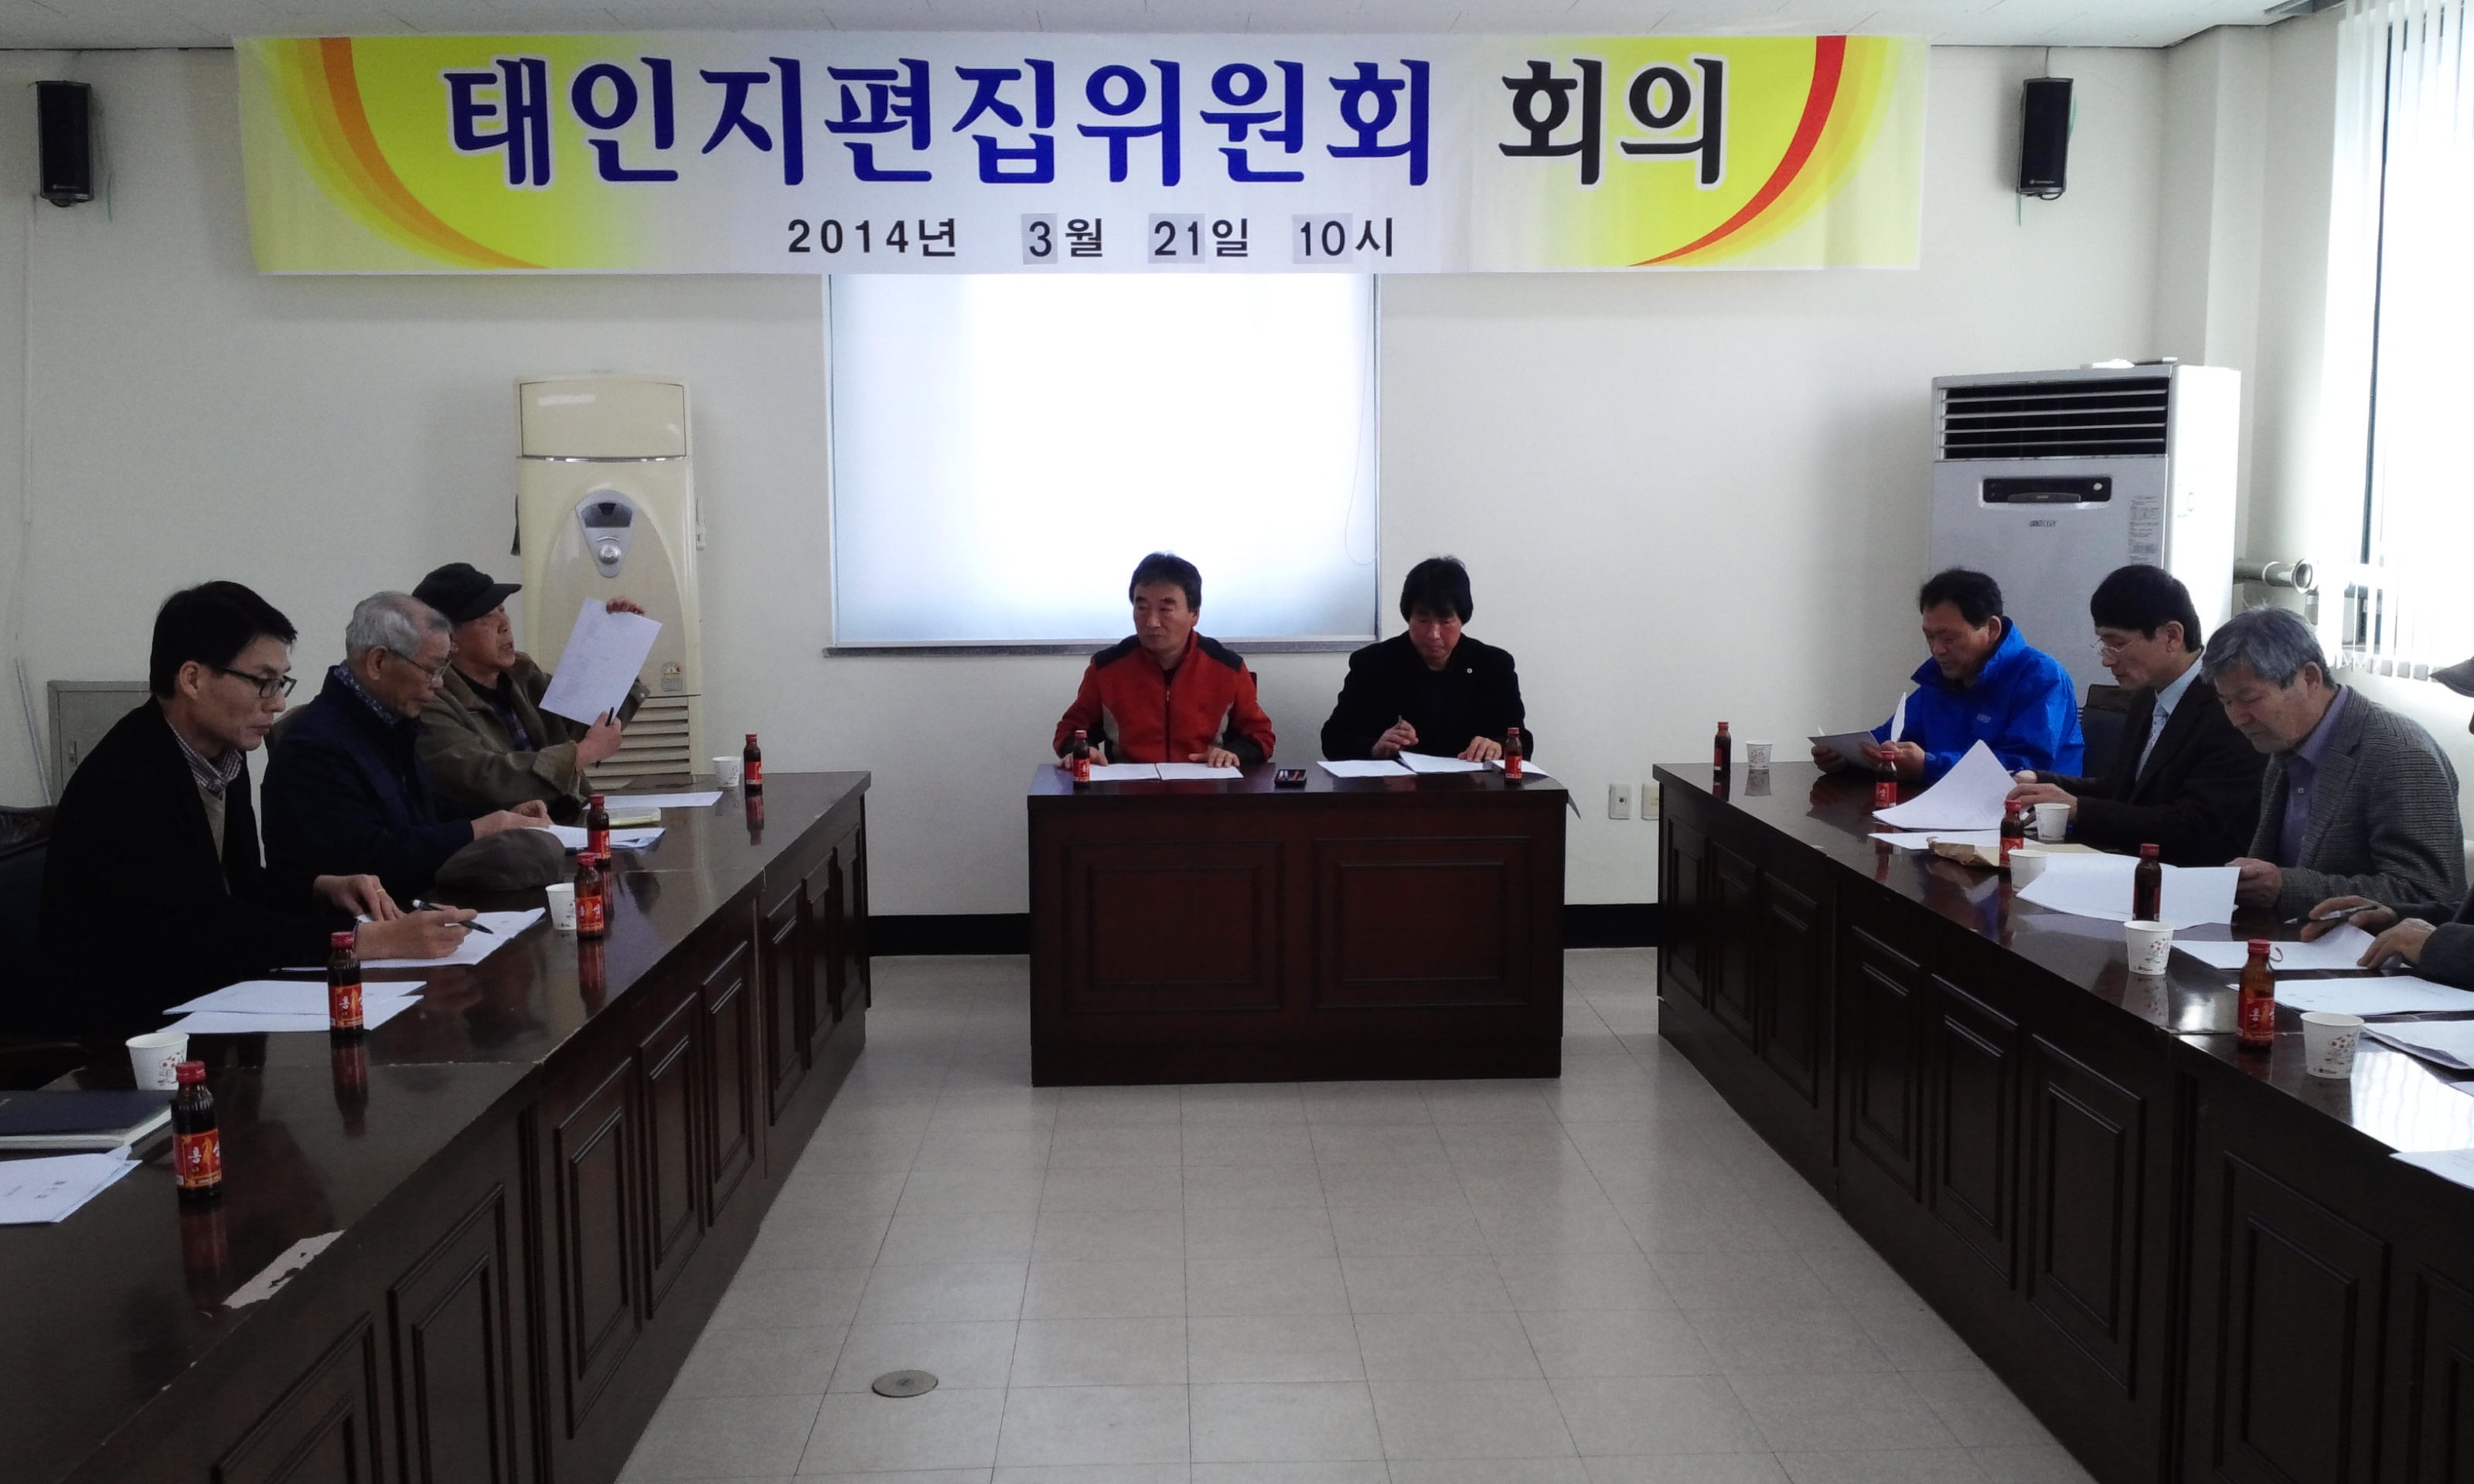 2014.03.21.태인지 편집위원회 회의 개최